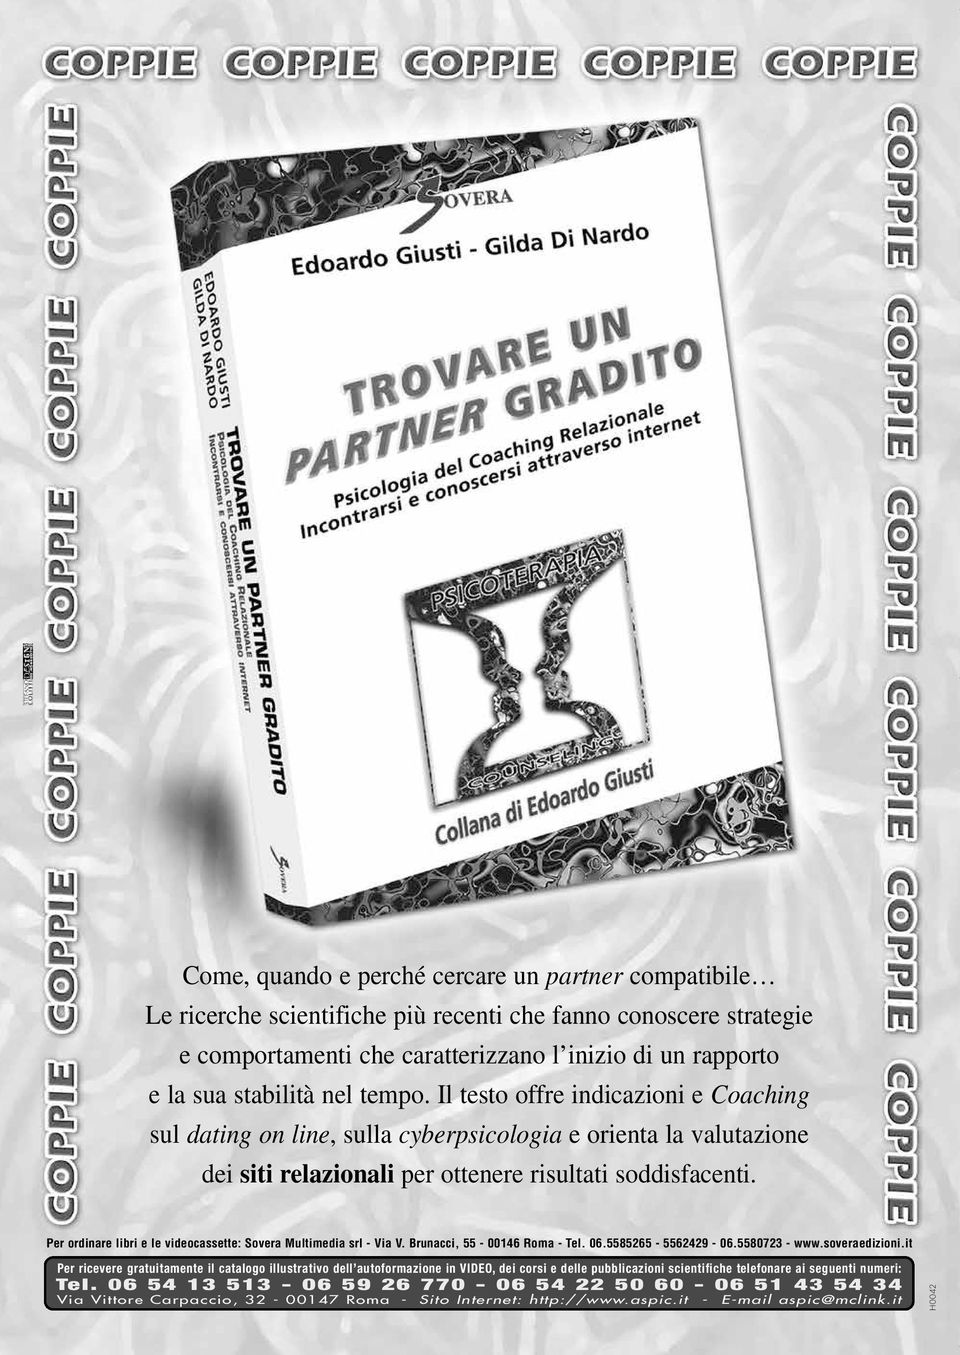 Per ordinare libri e le videocassette: Sovera Multimedia srl - Via V. Brunacci, 55-00146 Roma - Tel. 06.5585265-5562429 - 06.5580723 - www.soveraedizioni.